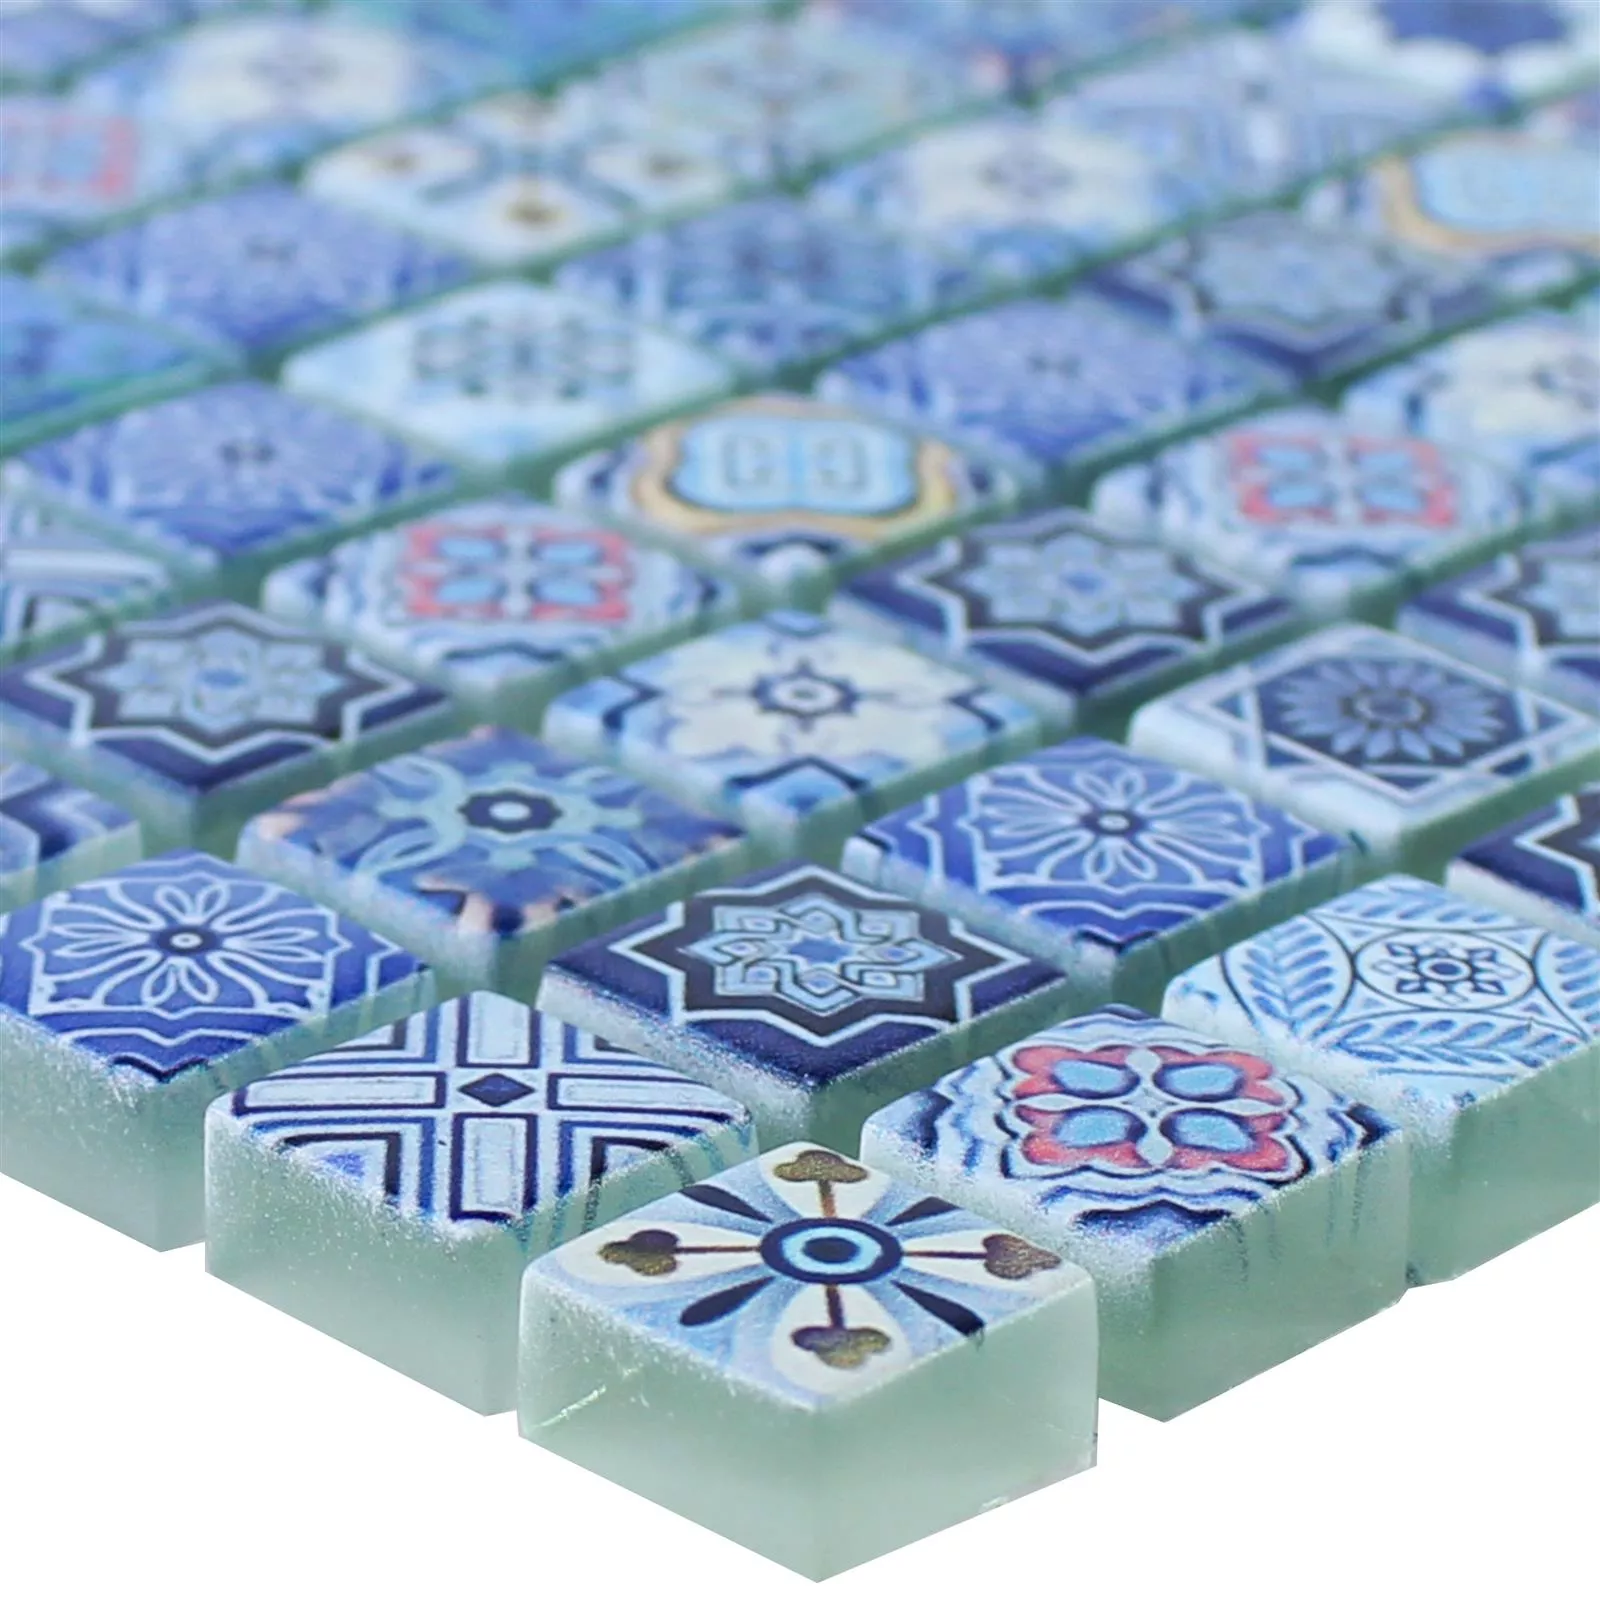 Sample Glass Mosaic Tiles Marrakech Blue